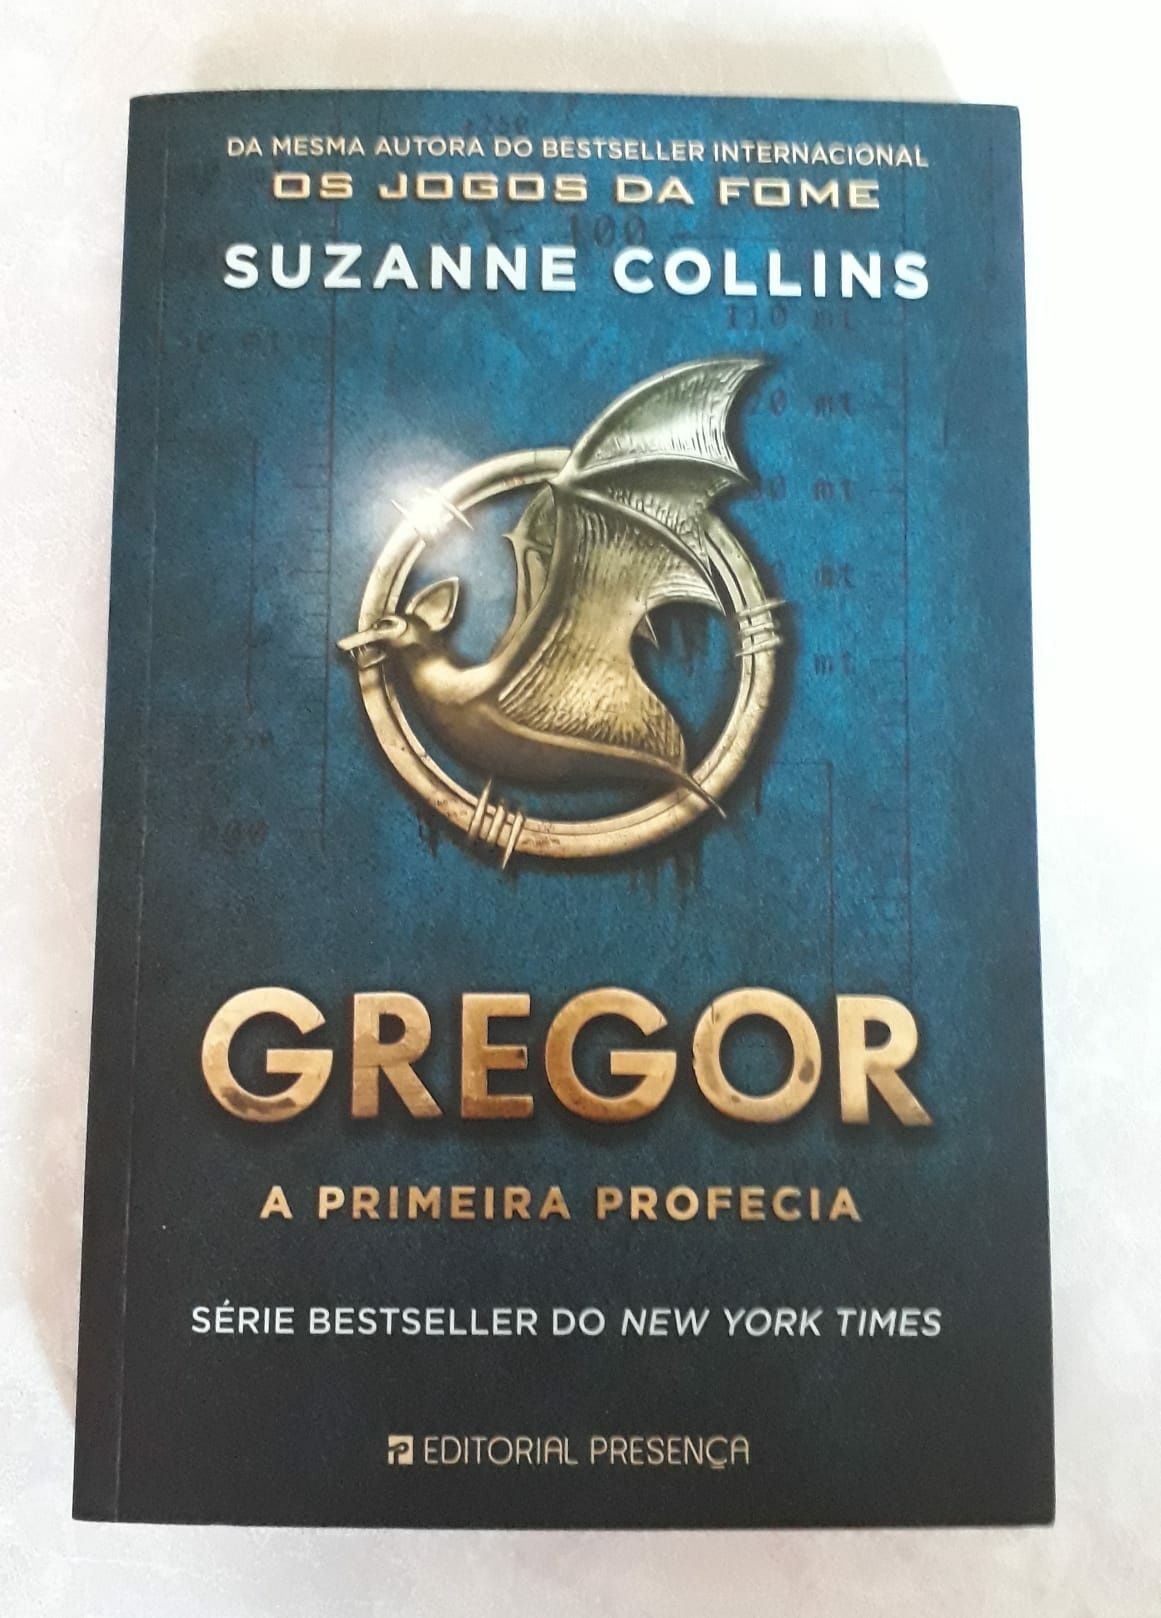 Livro "Gregor. A primeira profecia"